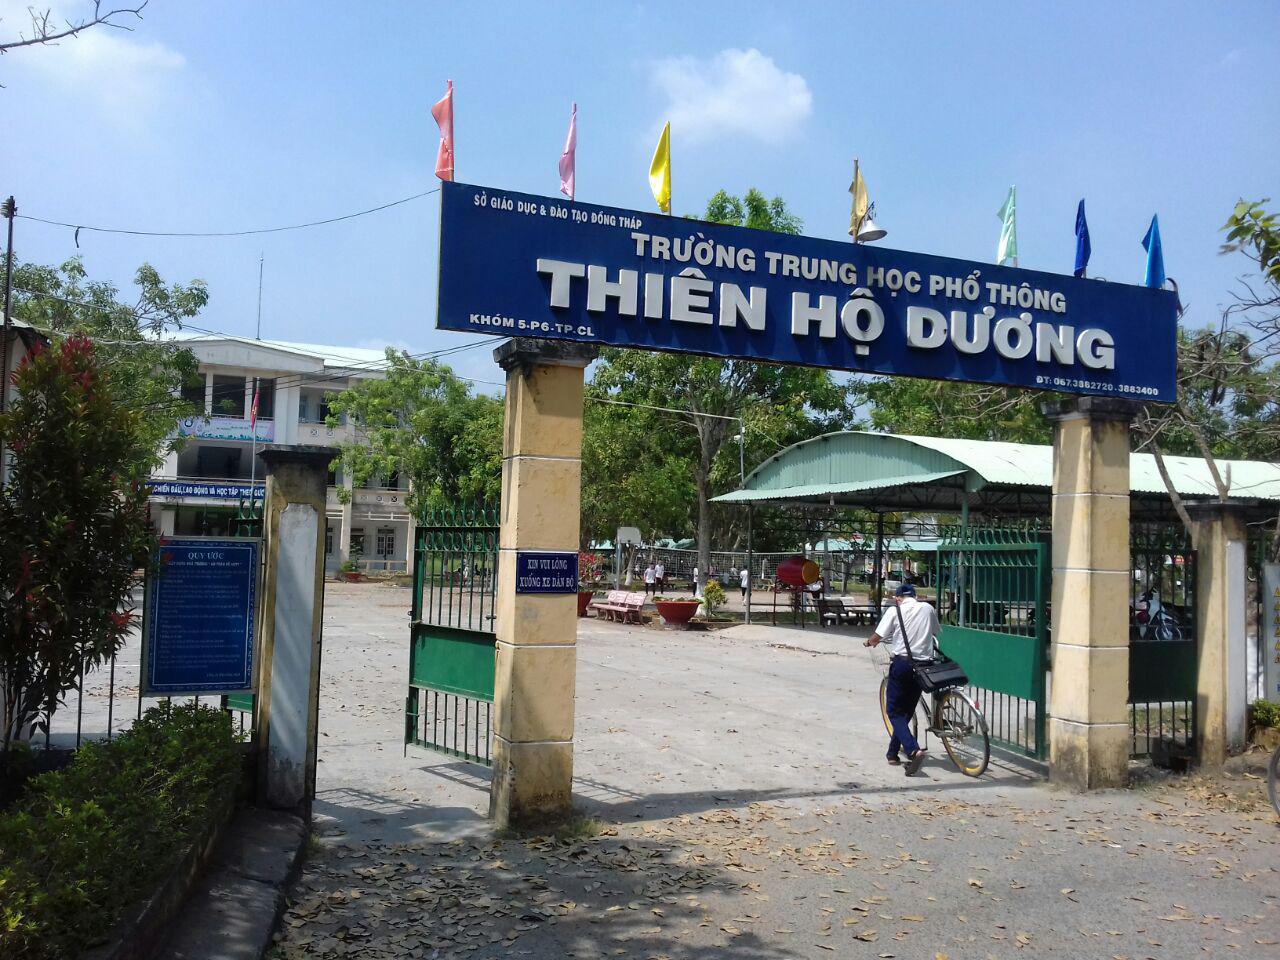 Phân hiệu ĐHQG-HCM tại tỉnh Bến Tre tham gia Tư vấn tuyển sinh 2018 tại tỉnh Đồng Tháp